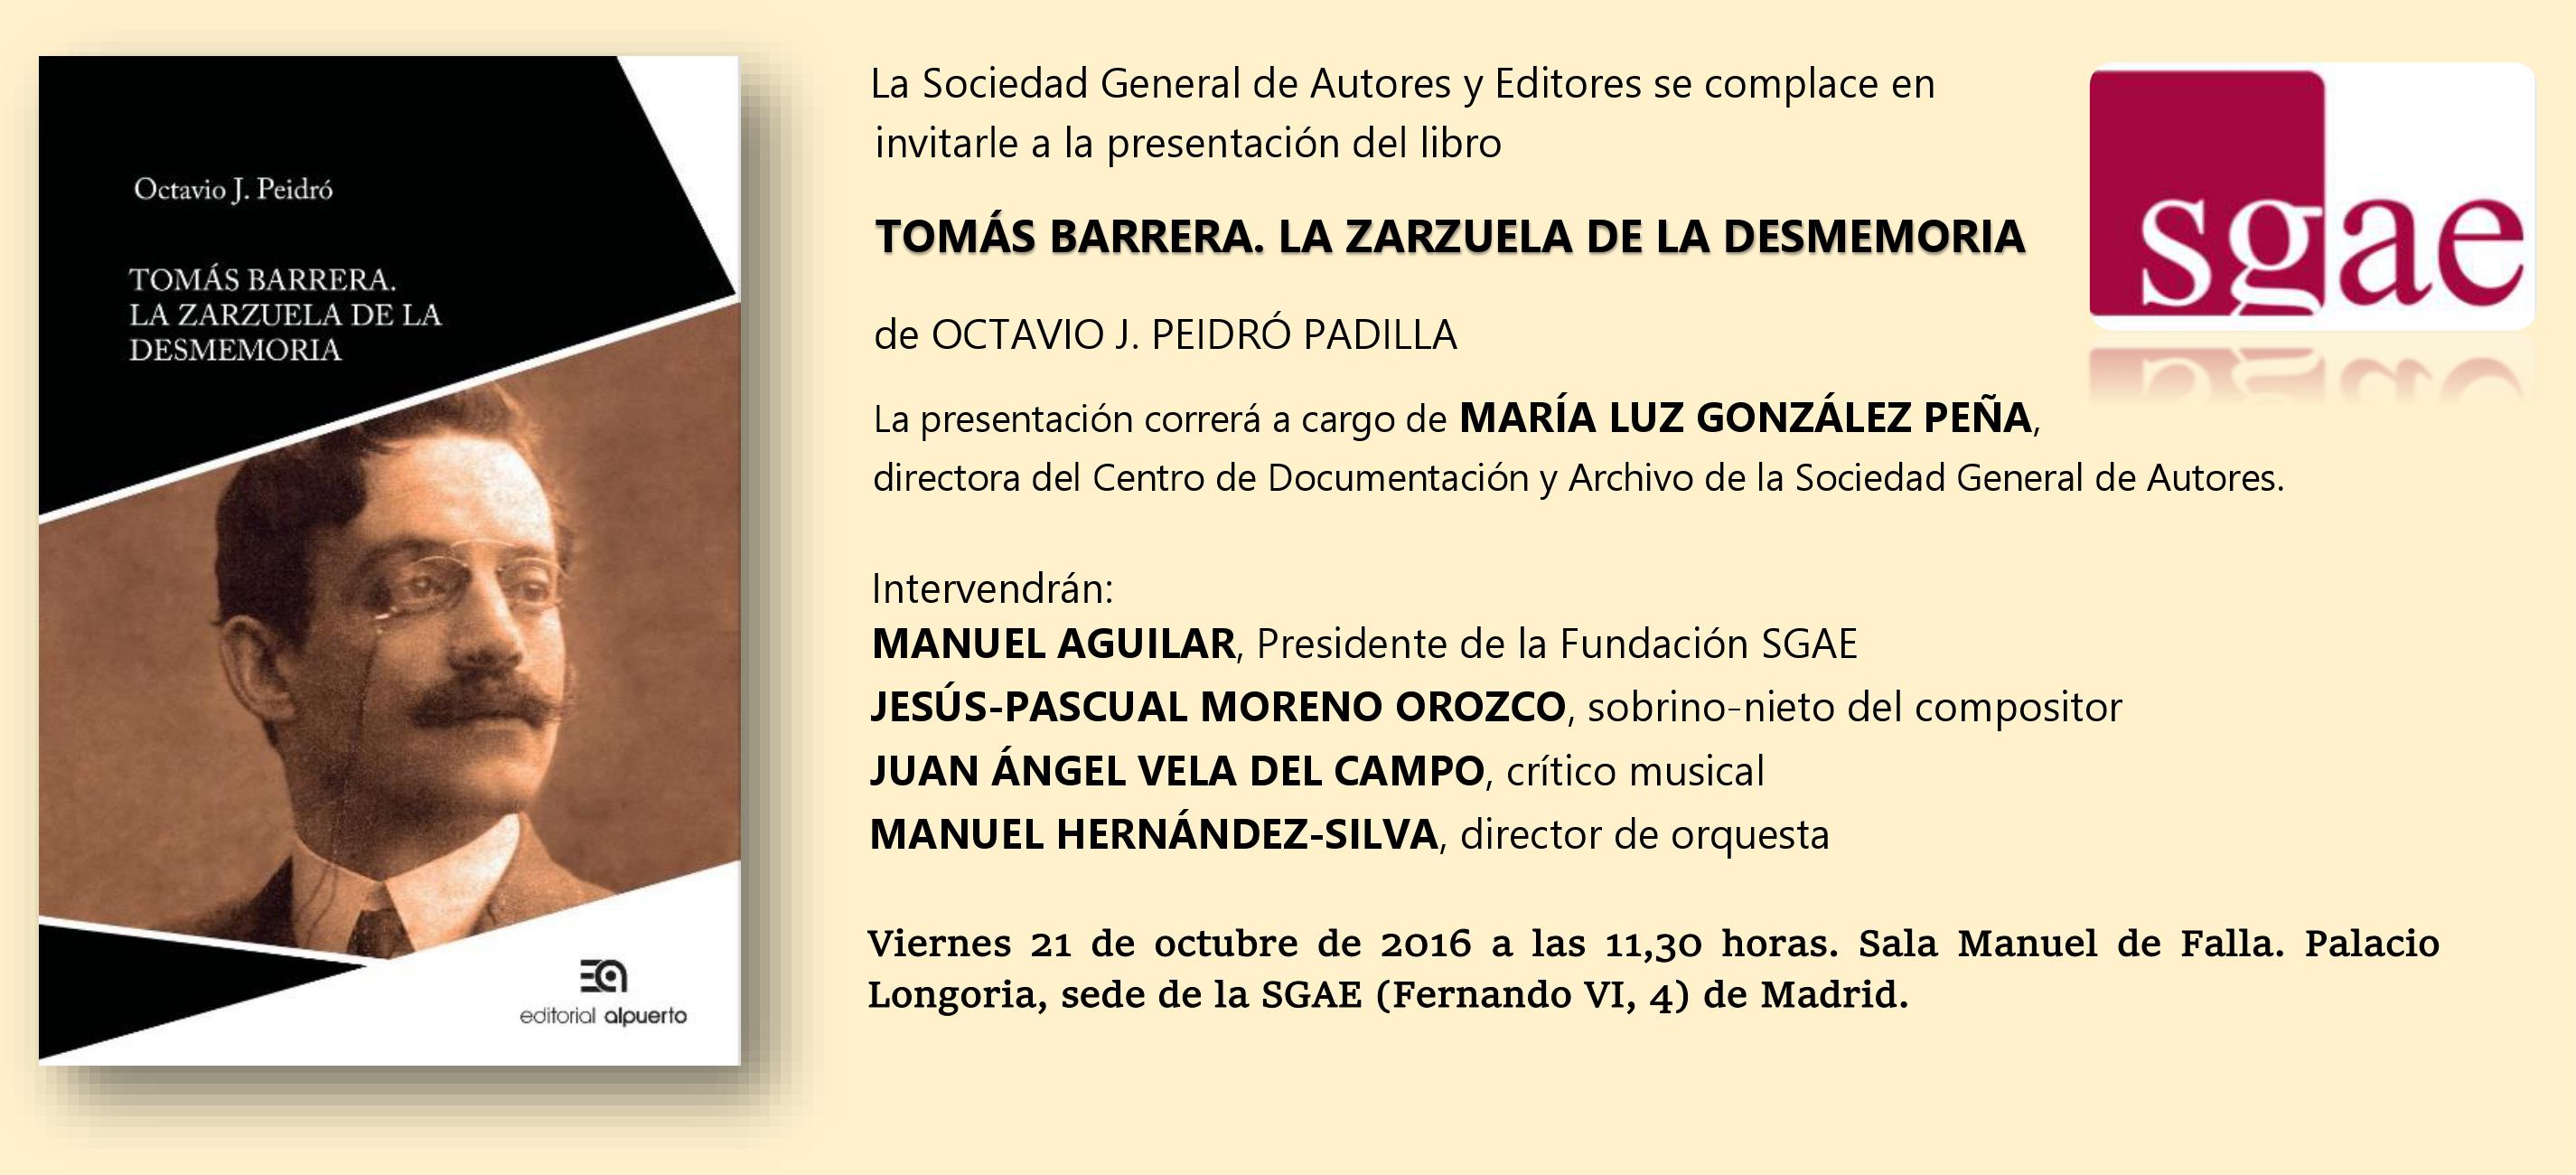 Presentación del libro "Tomás Barrera. La zarzuela de la desmemoria" de Octavio J. Peidró